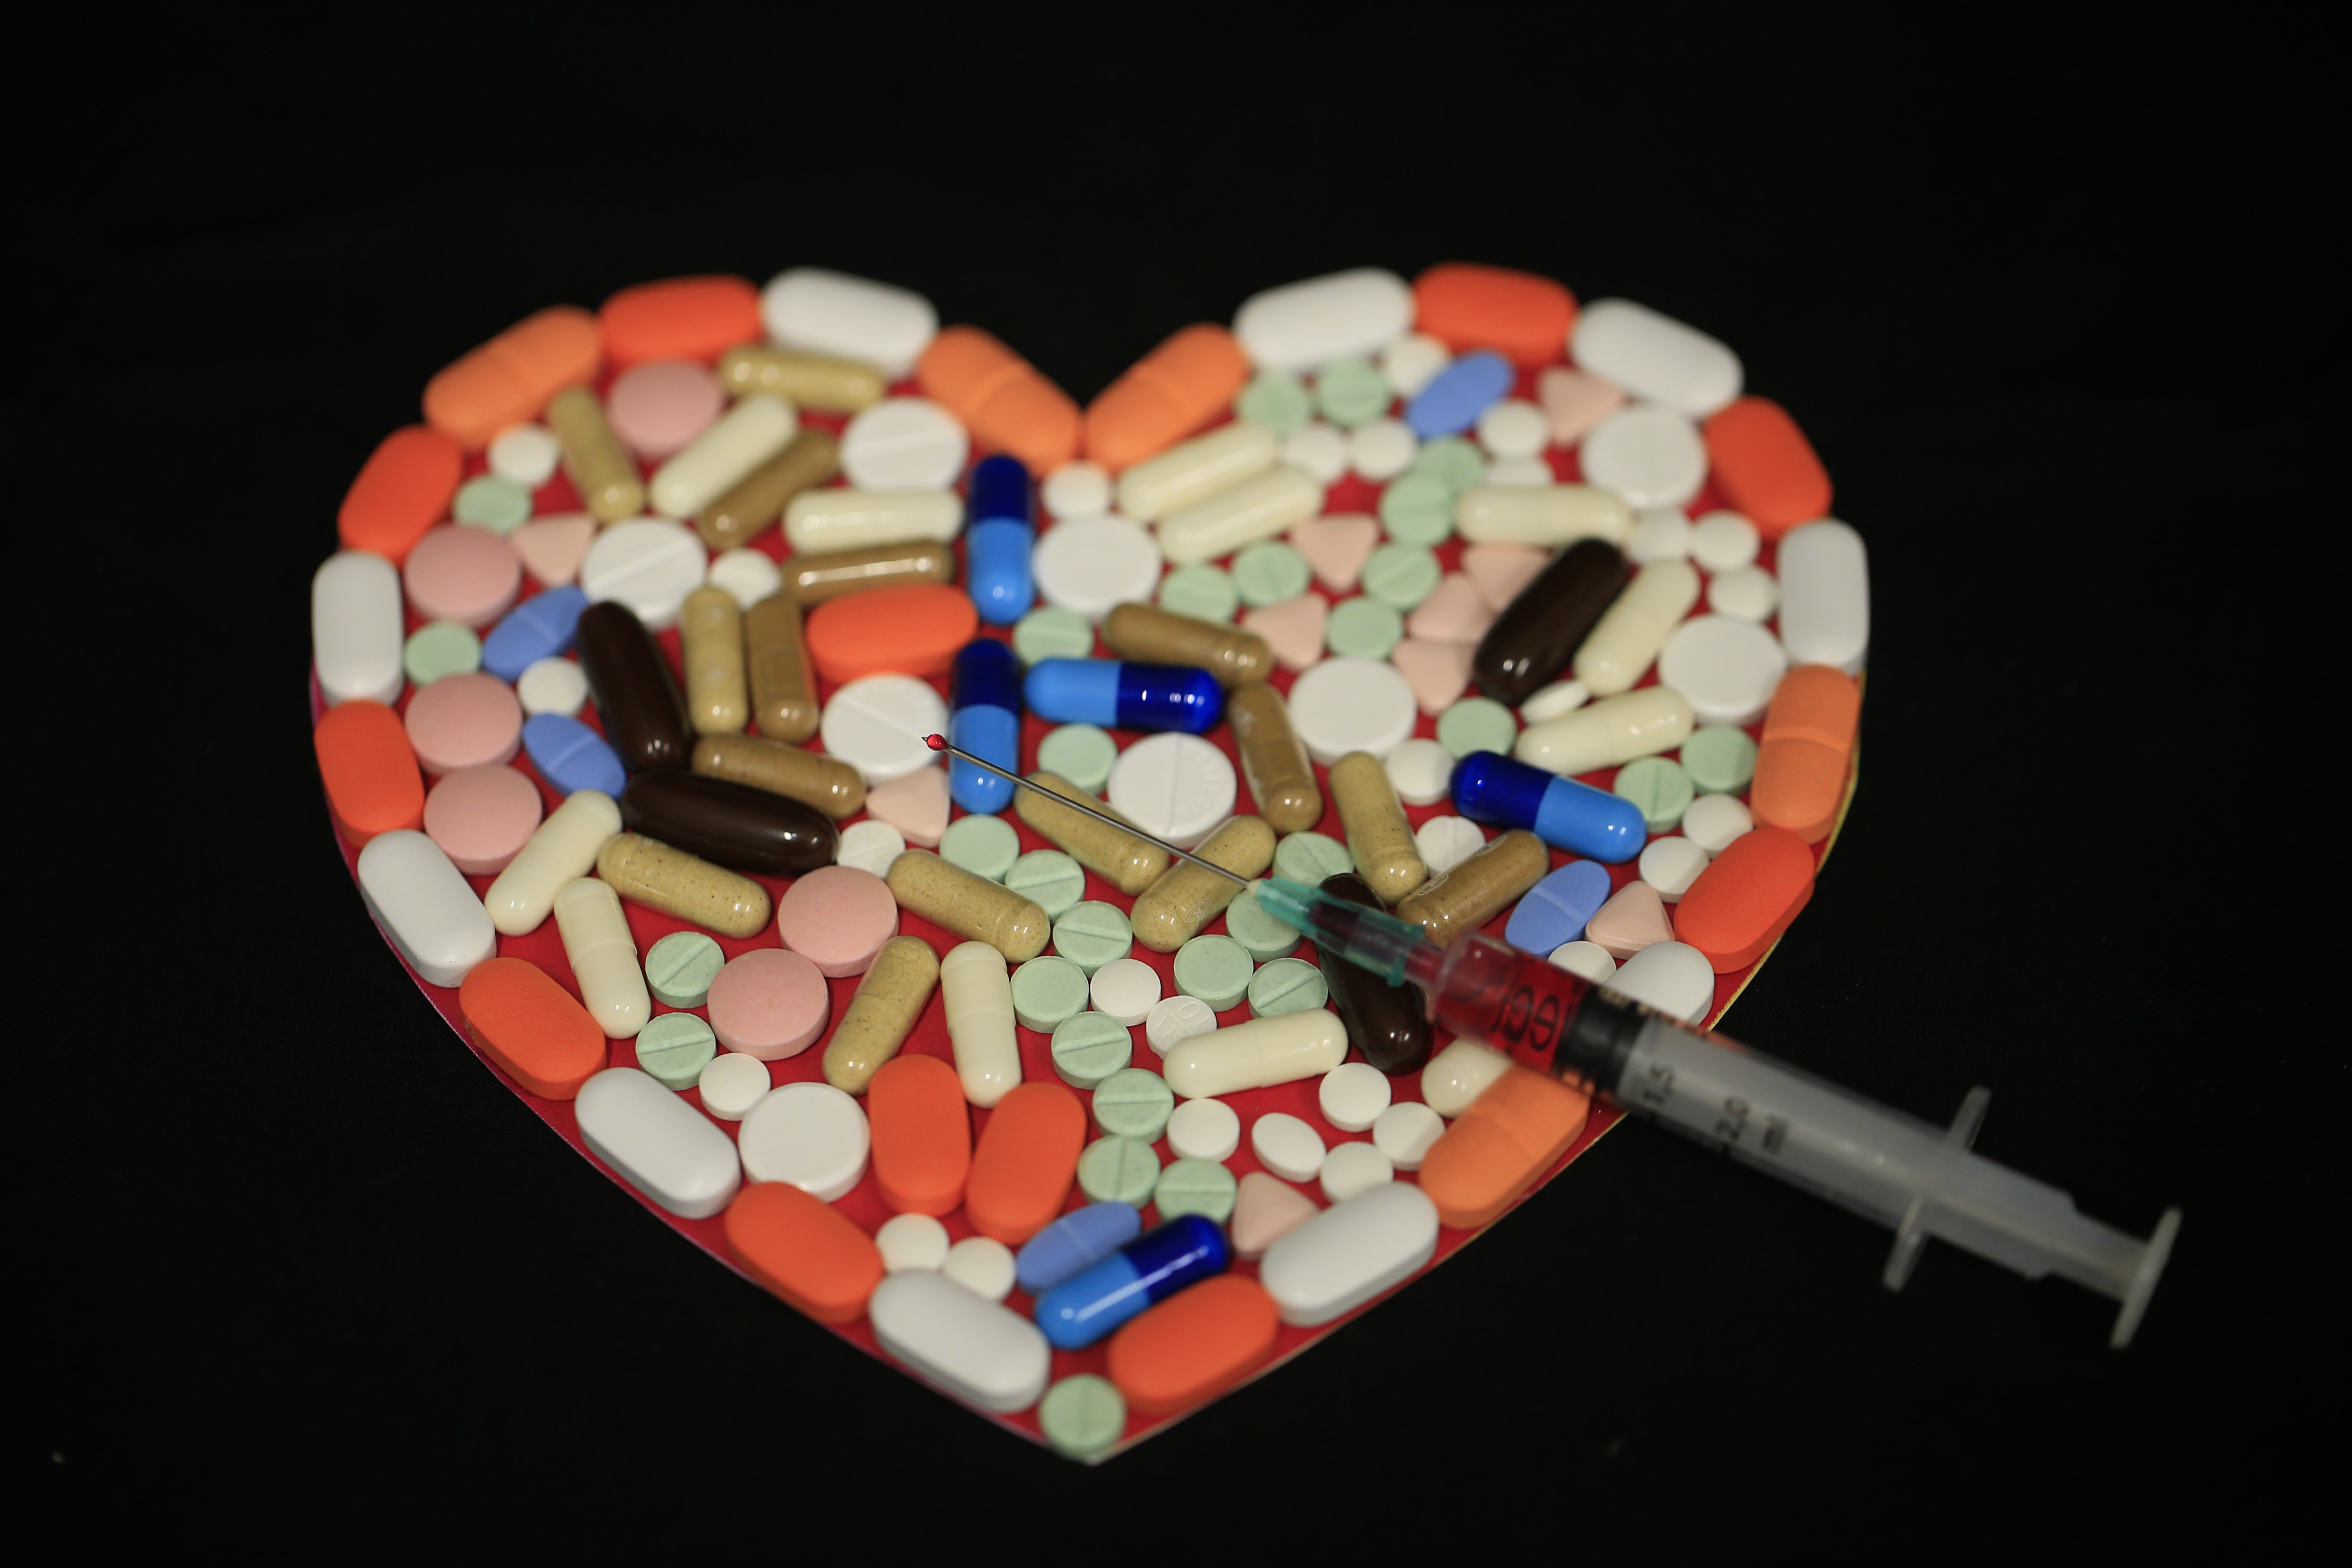 A felére csökkenthető a szívbetegségek kockázata a négy gyógyszert egyesítő szupertablettával